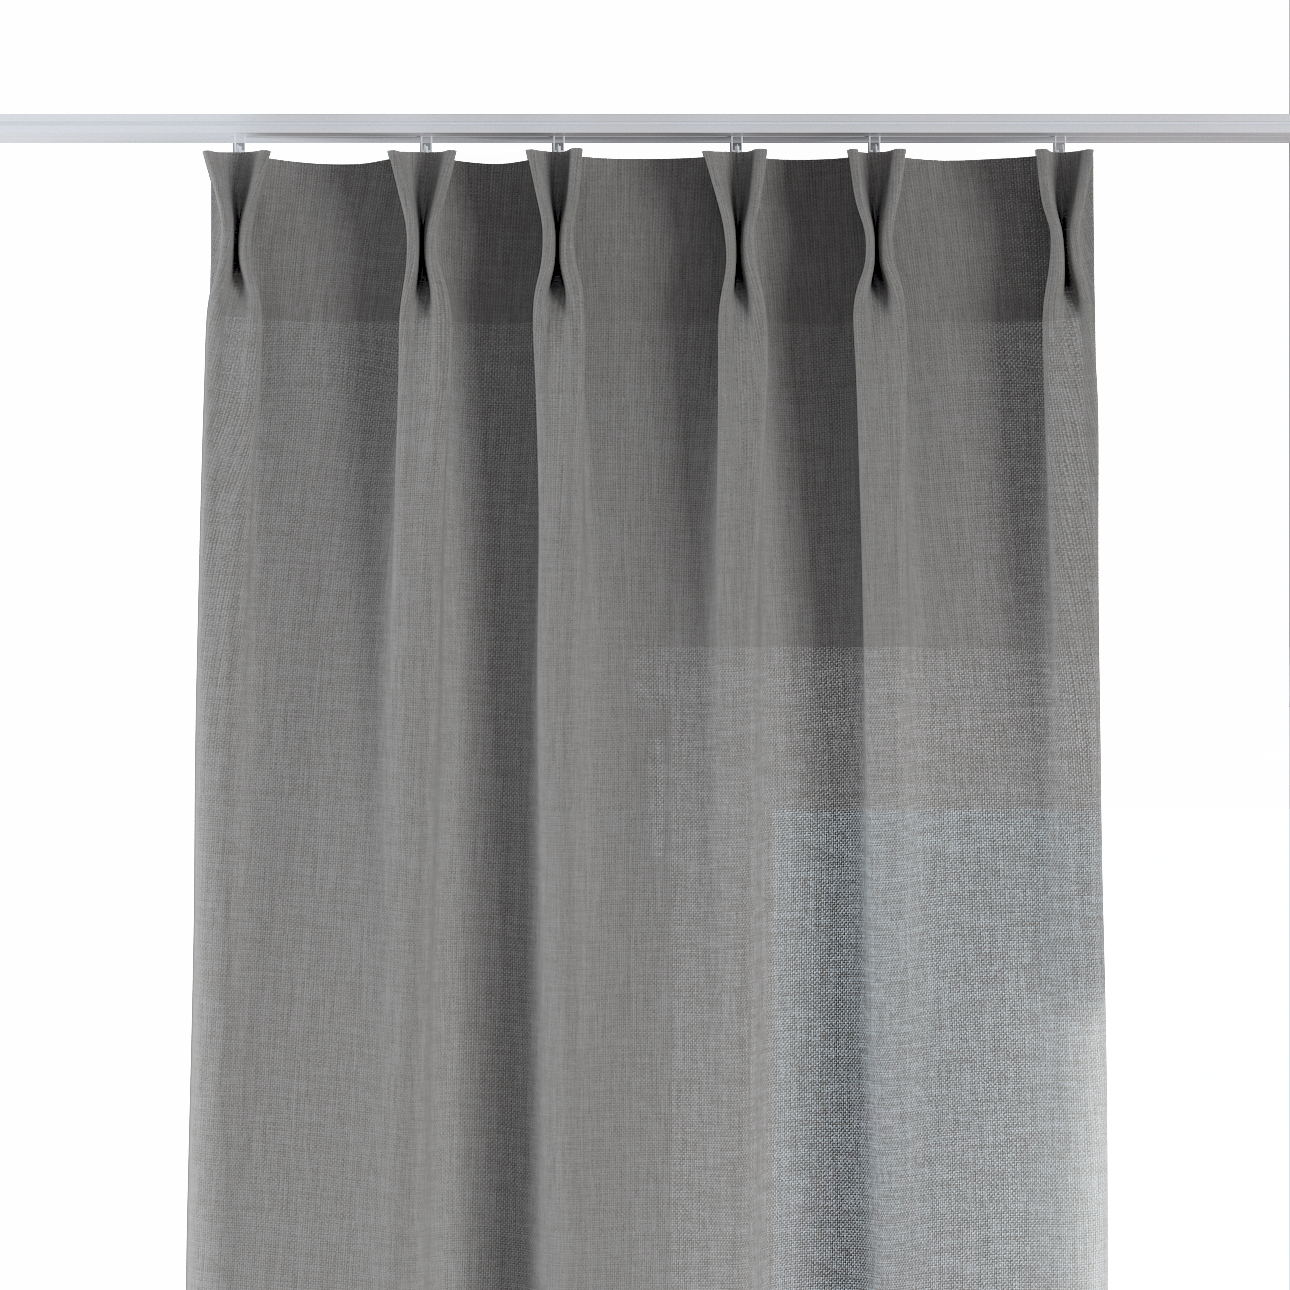 Vorhang mit flämischen 2-er Falten, grau, Sensual Premium (144-55) günstig online kaufen